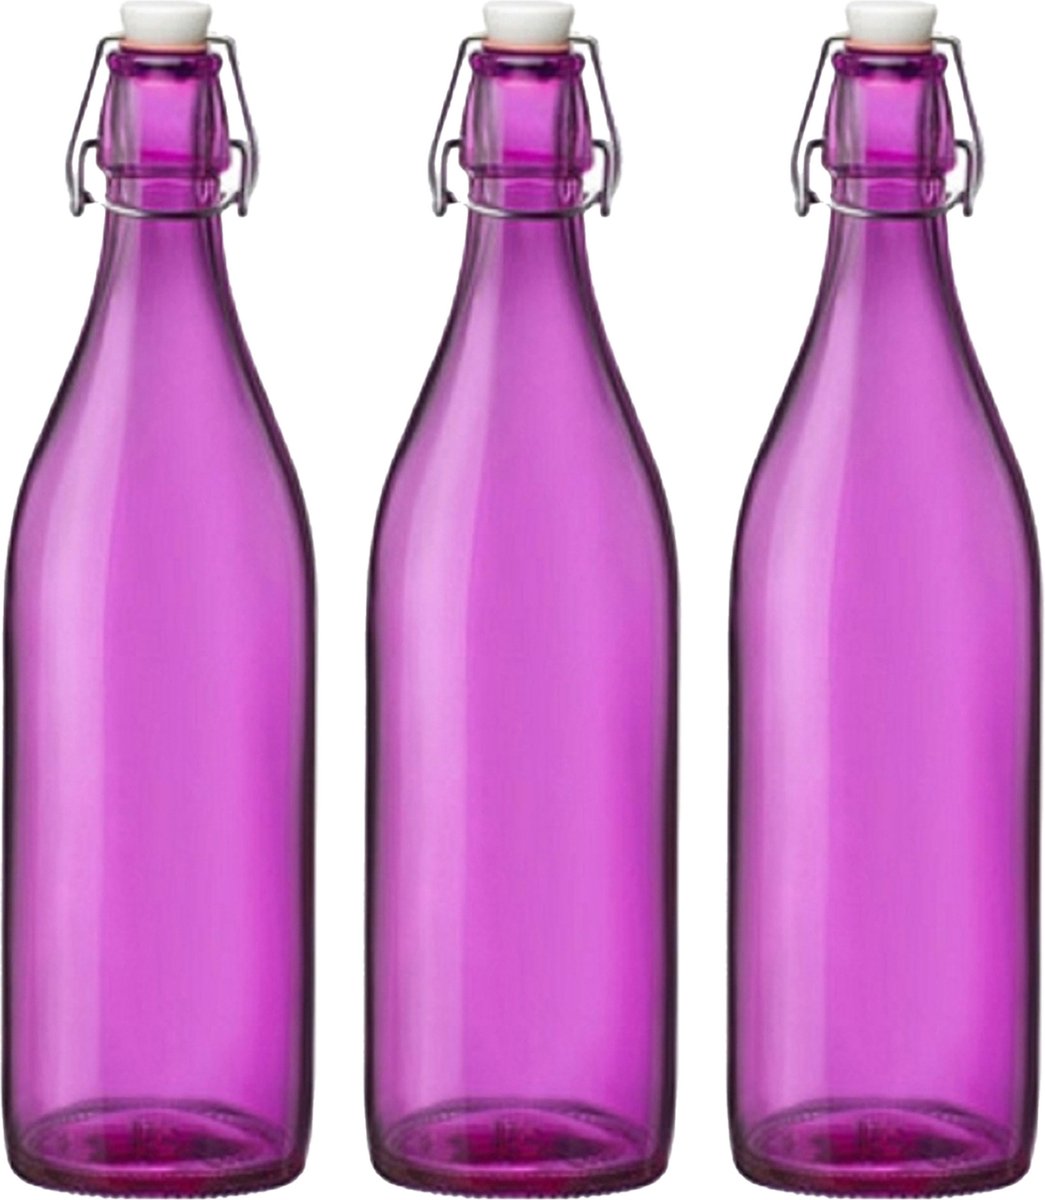 Cuisine Elegance set van 4x stuks weckflessen roze beugeldop glas van 1 liter